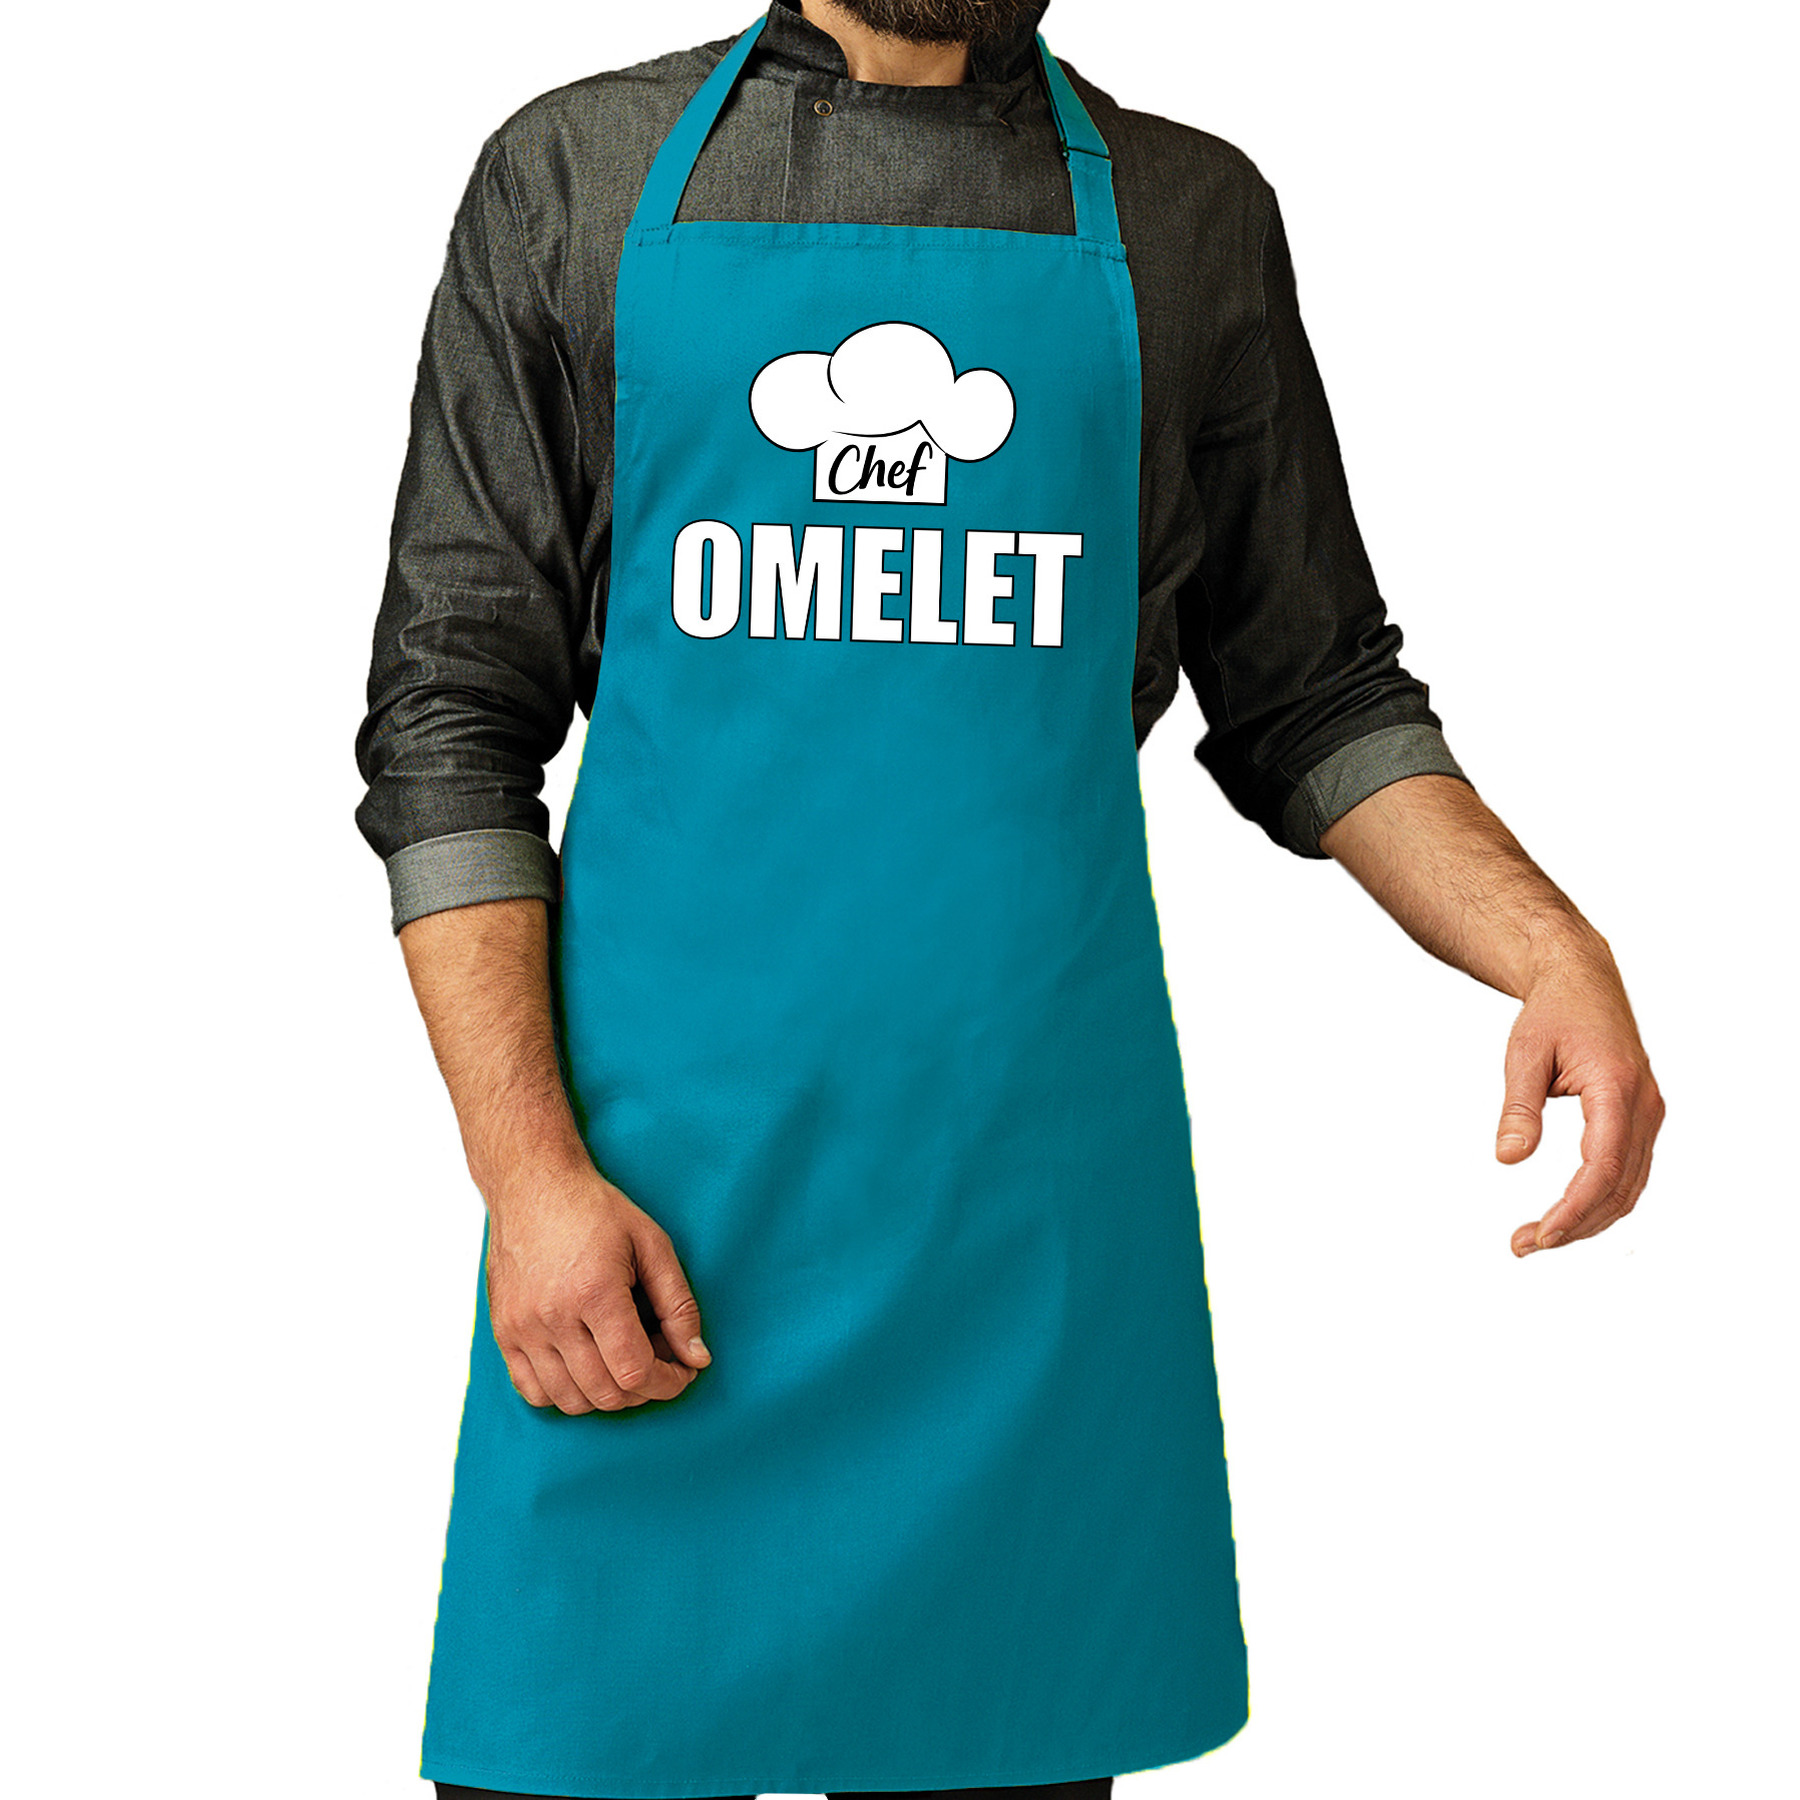 Chef omelet schort - keukenschort turquoise heren